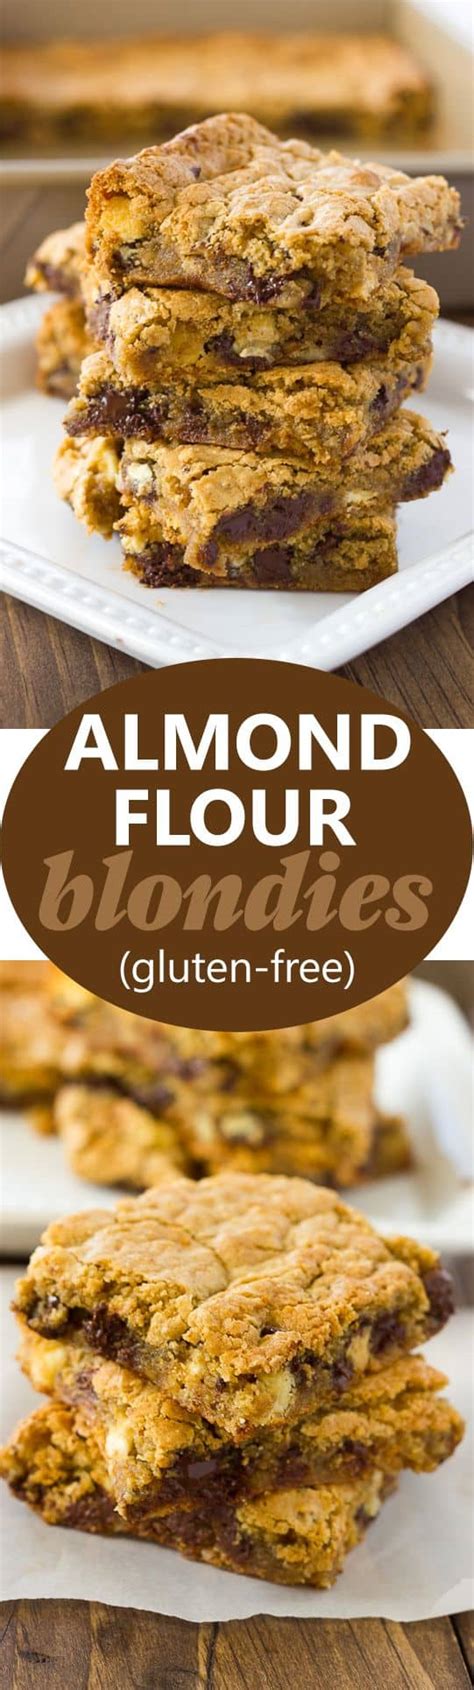 almond-flour-blondies-gluten-free-dairy-free-option image